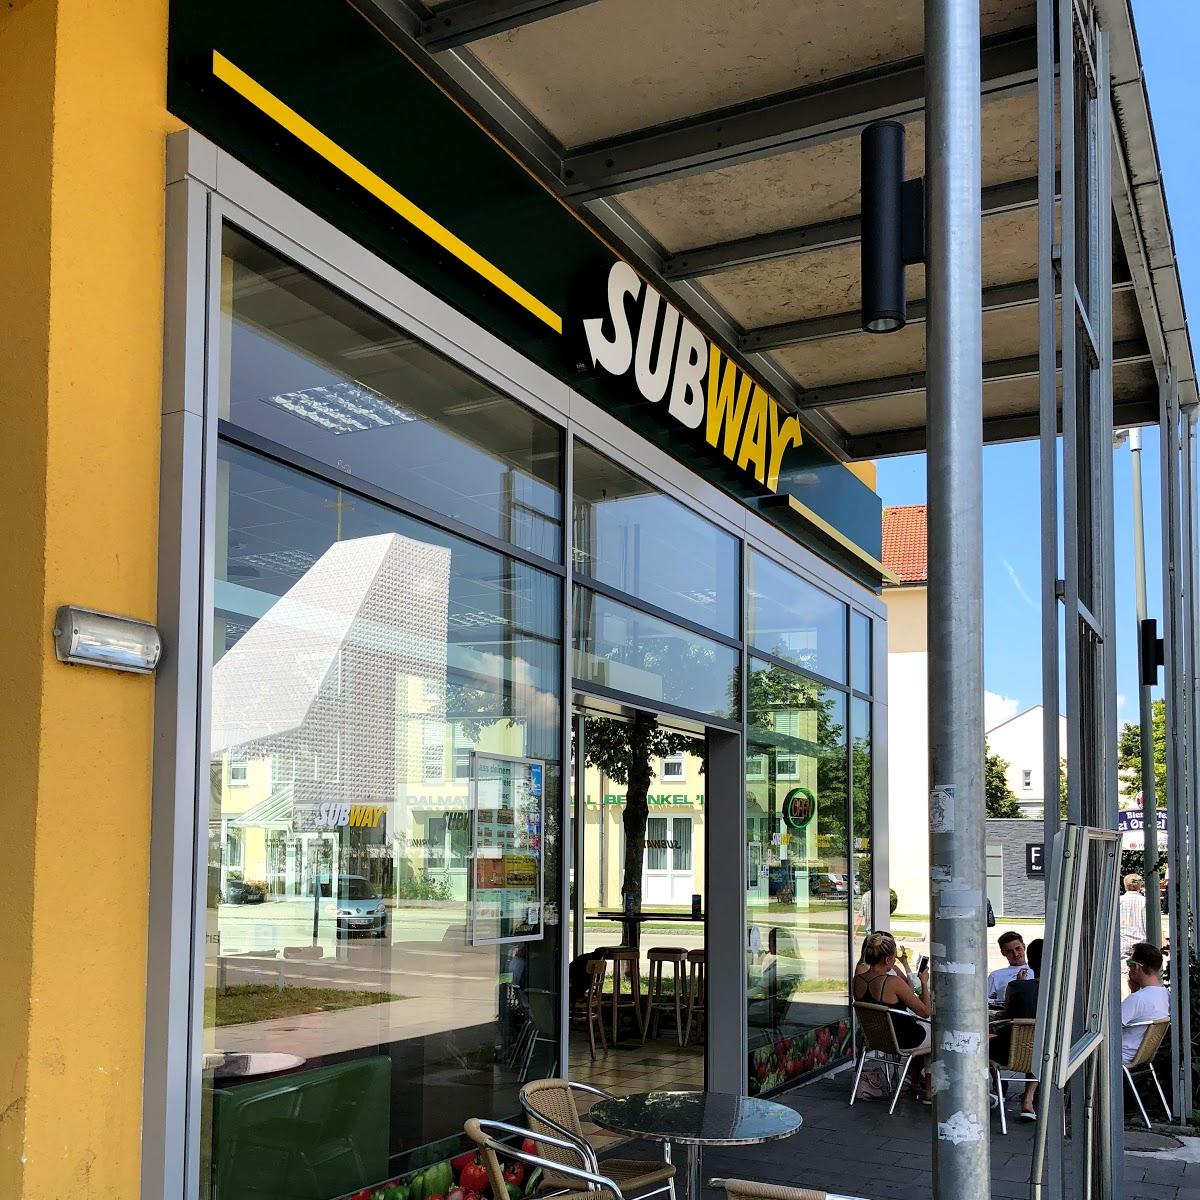 Restaurant "Subway" in  Poing